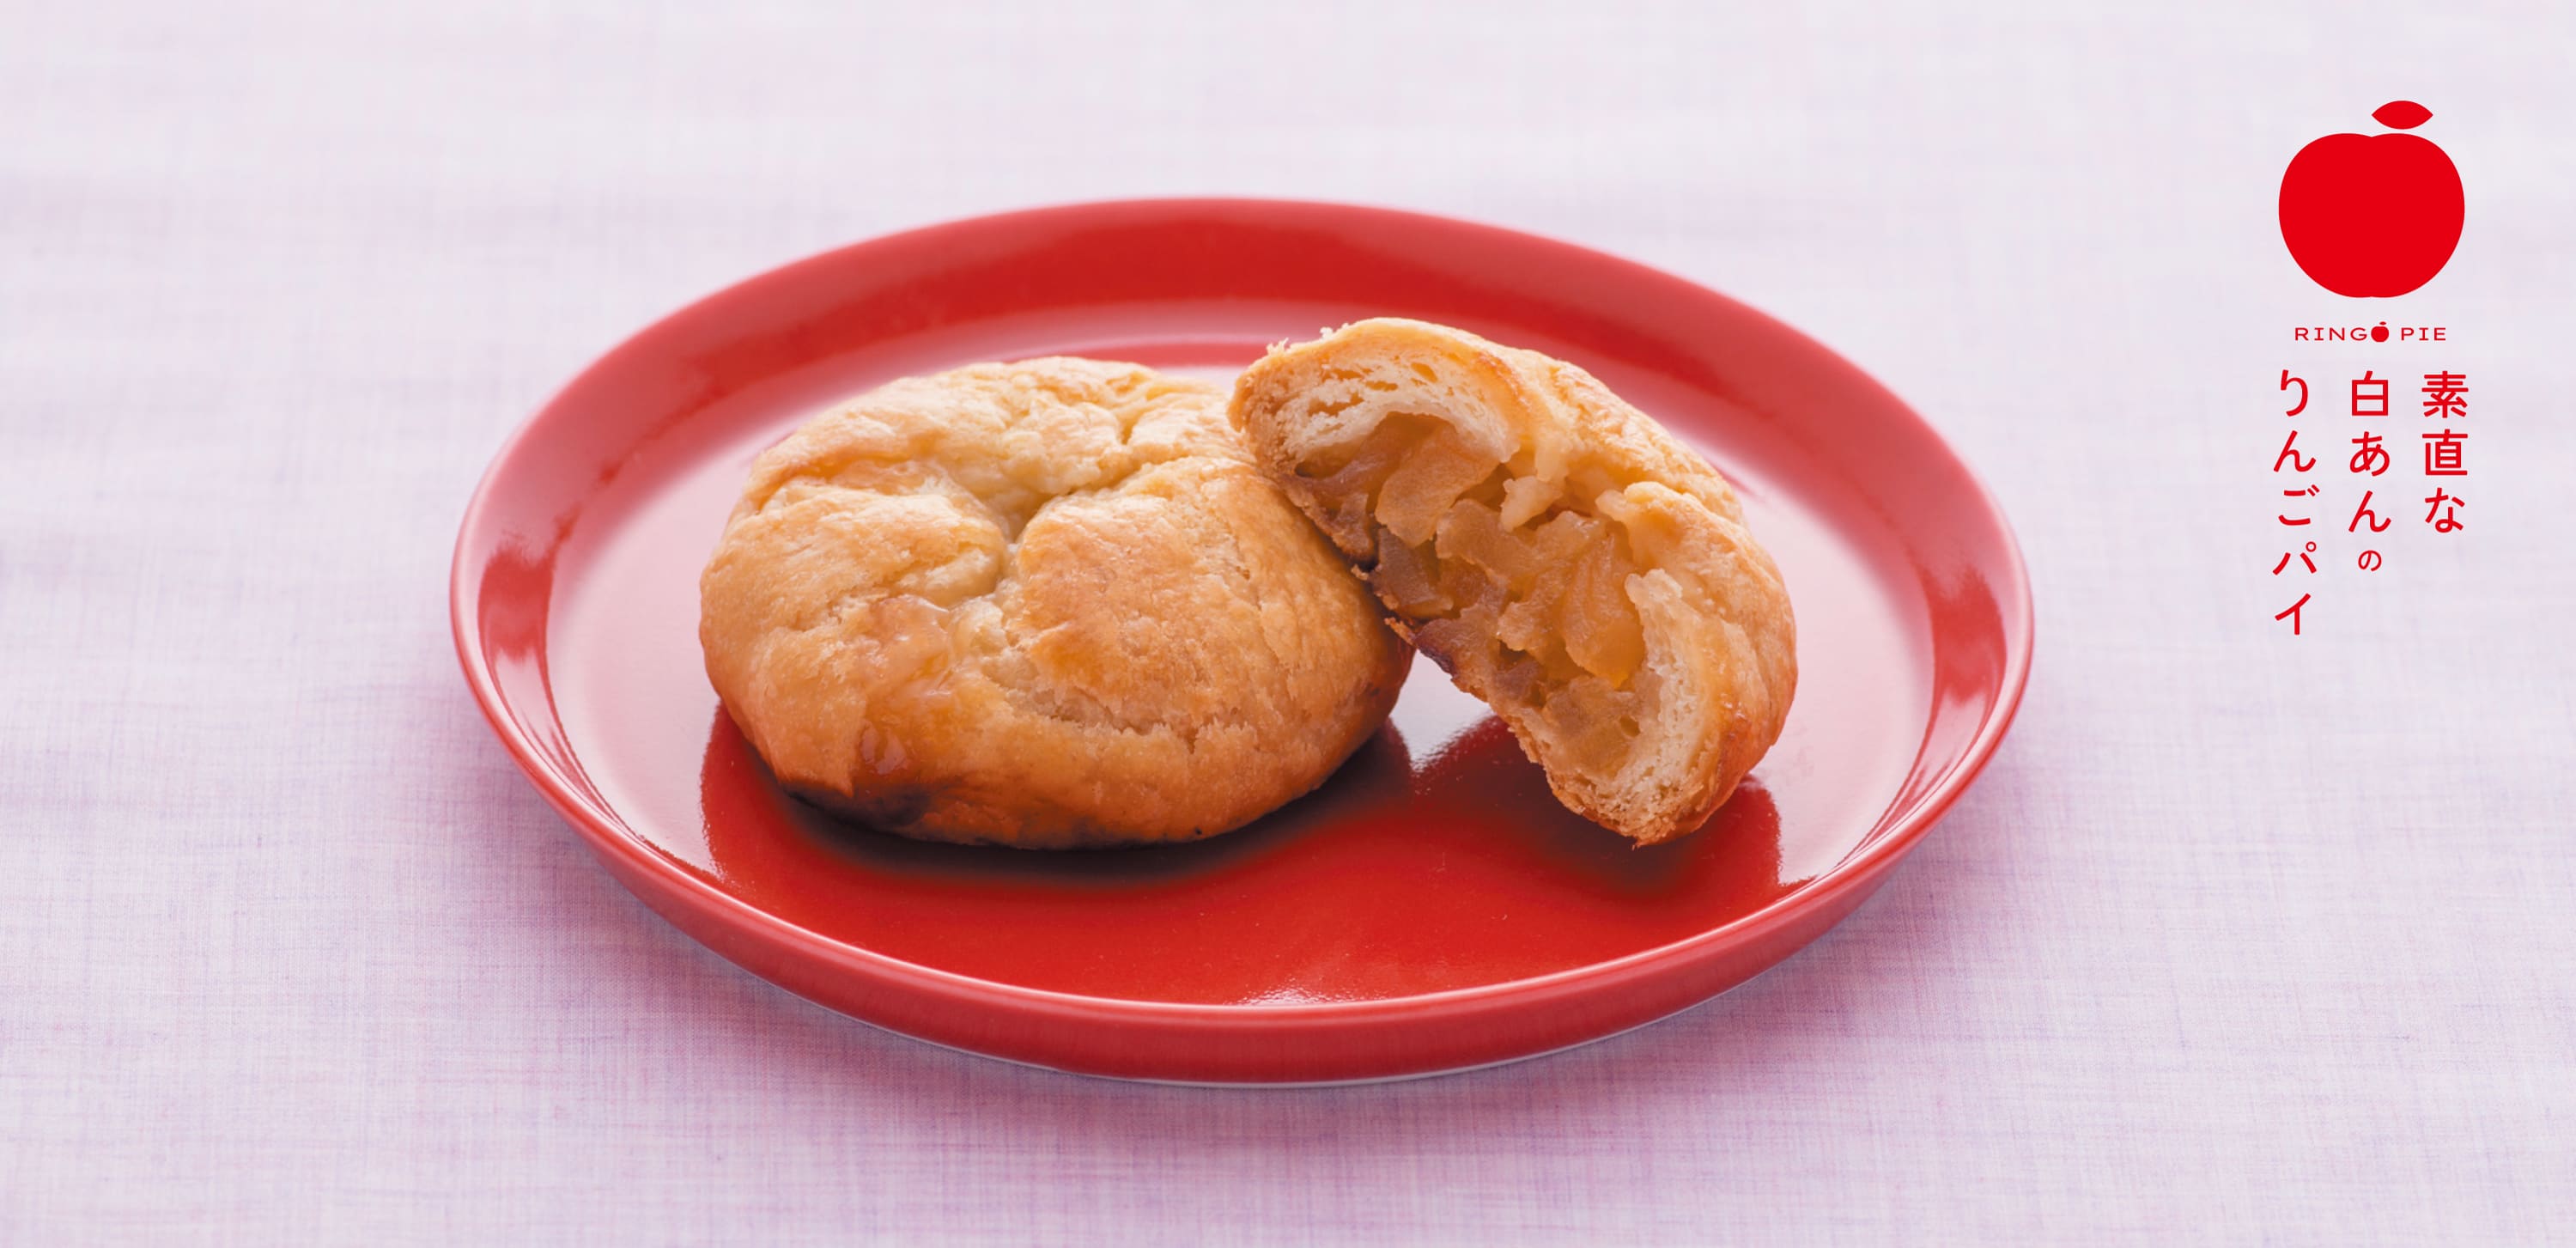 竹内菓子舗 素直な白あんのりんごパイ